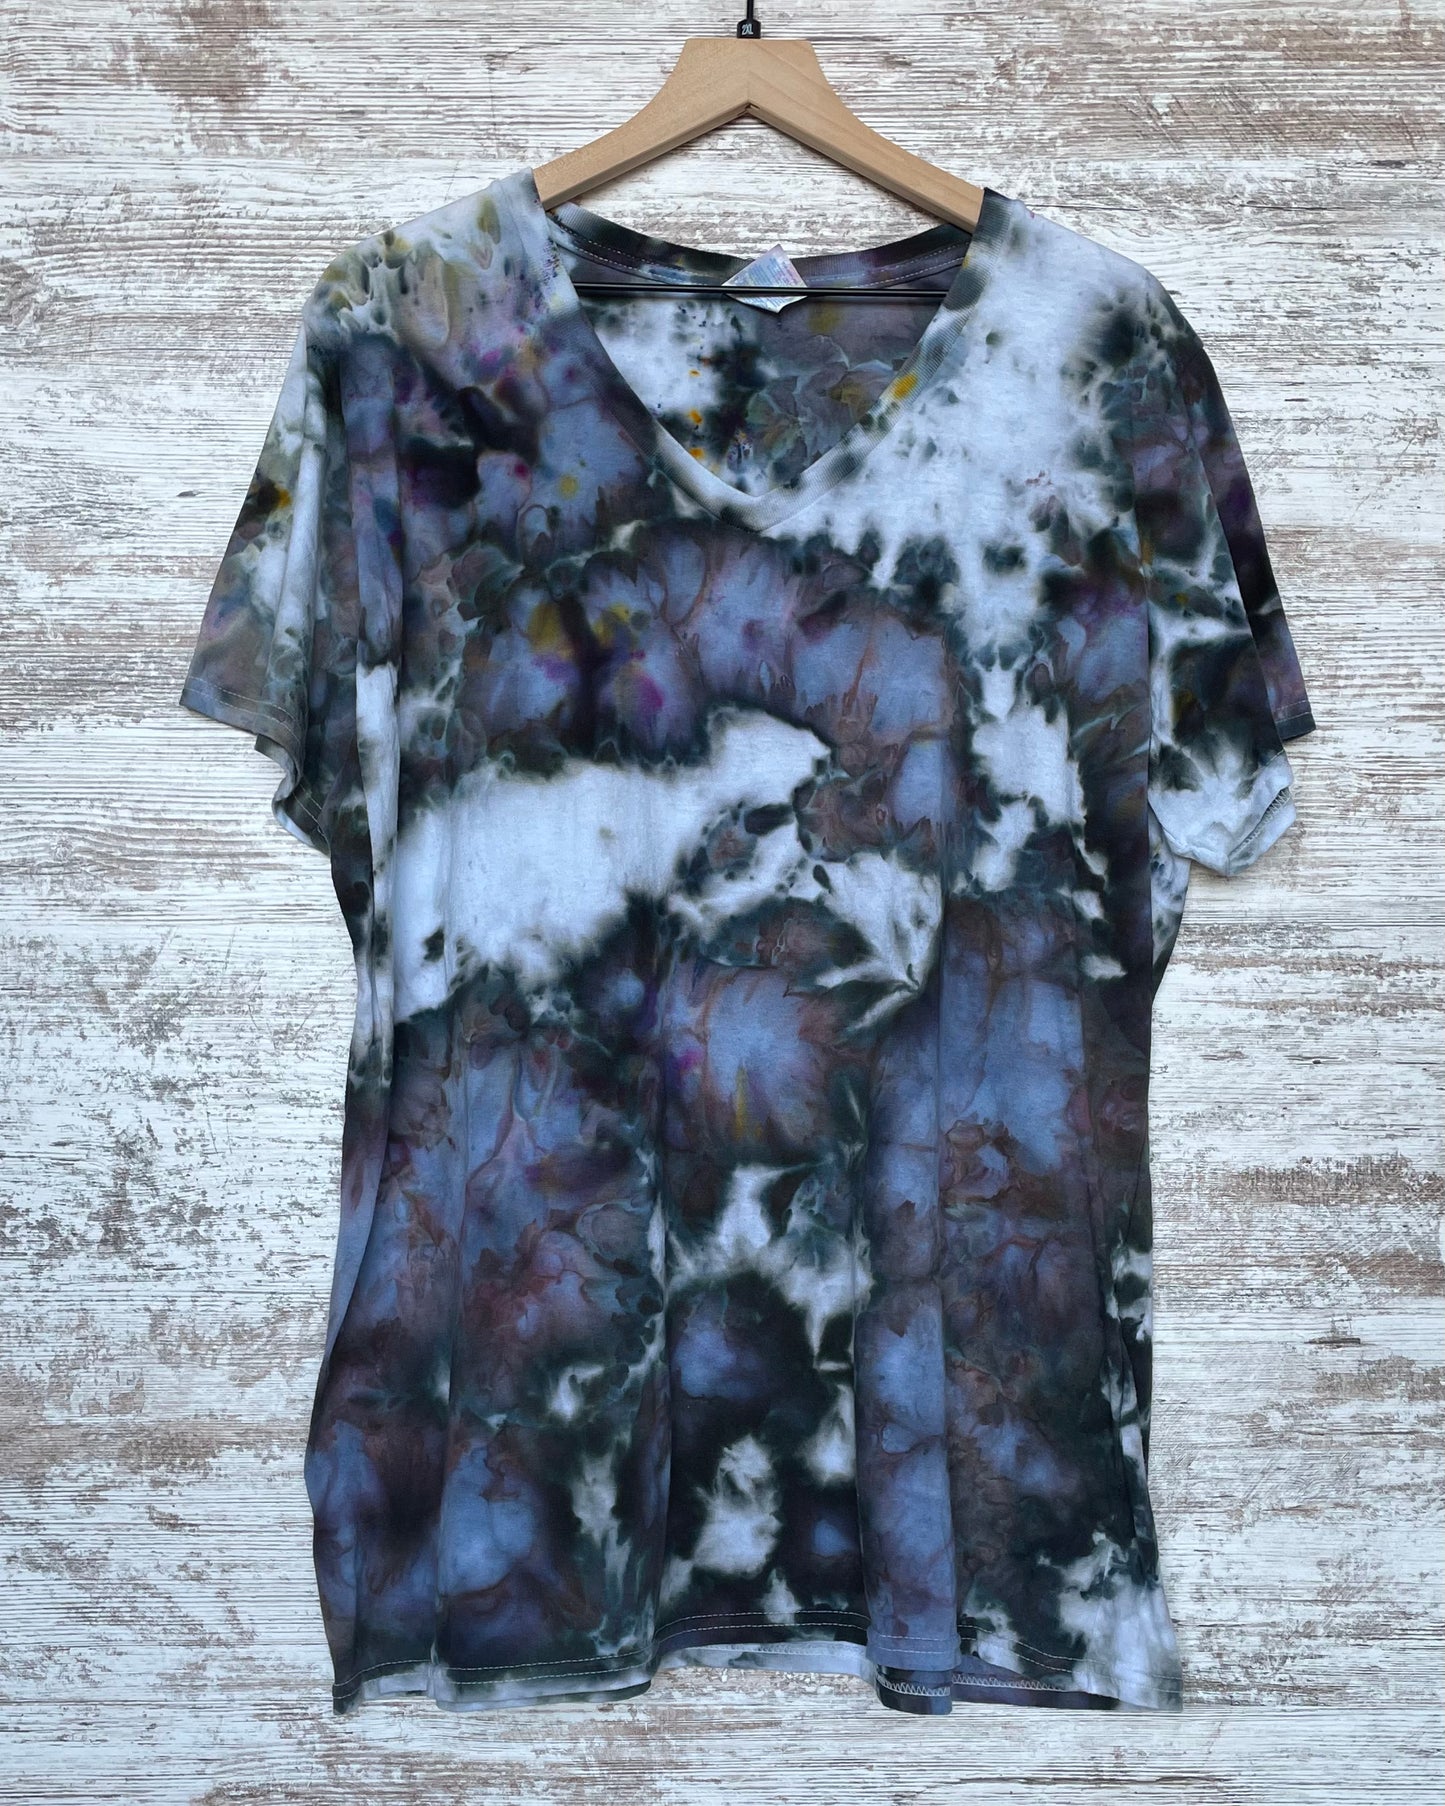 Moonlight Ice-Dyed Women's V-Neck T-shirt